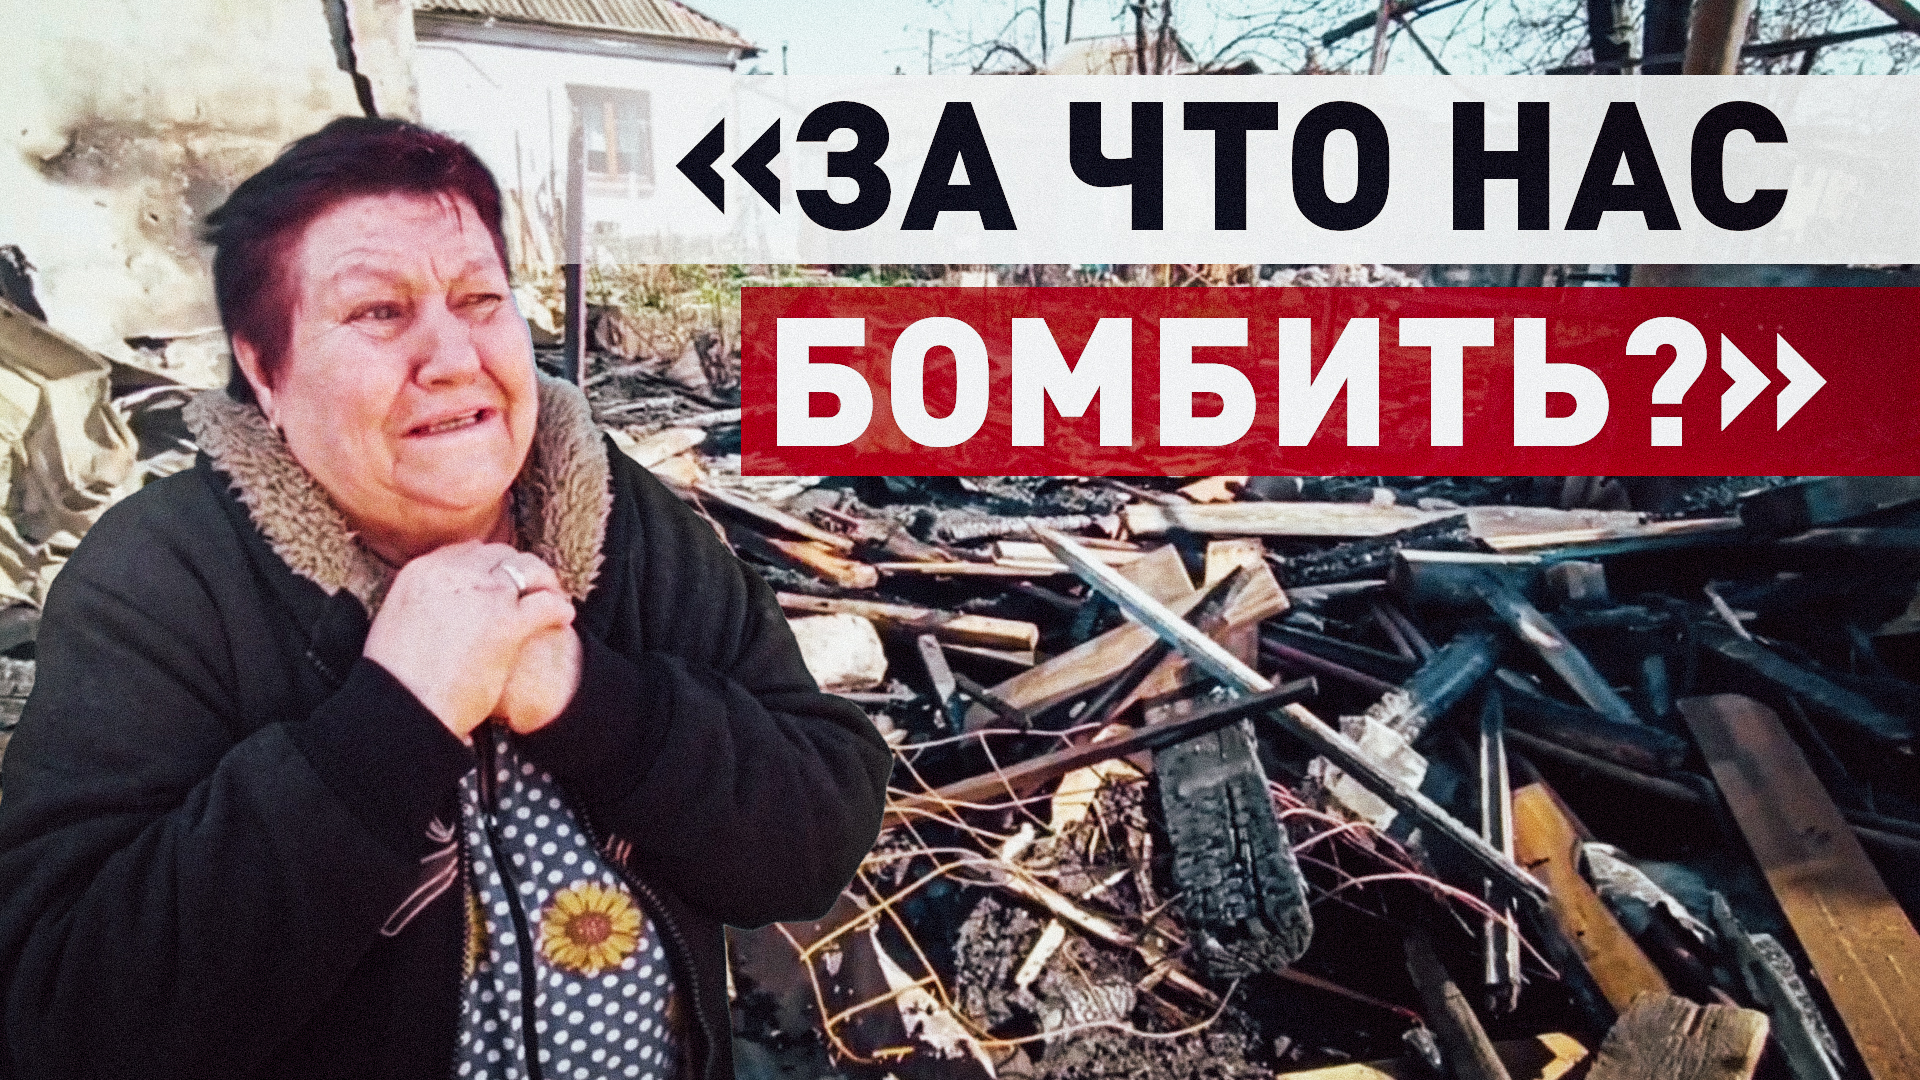 «Мы простые люди, чего они в нас стреляют?»: жительница Донецка об атаке ВСУ